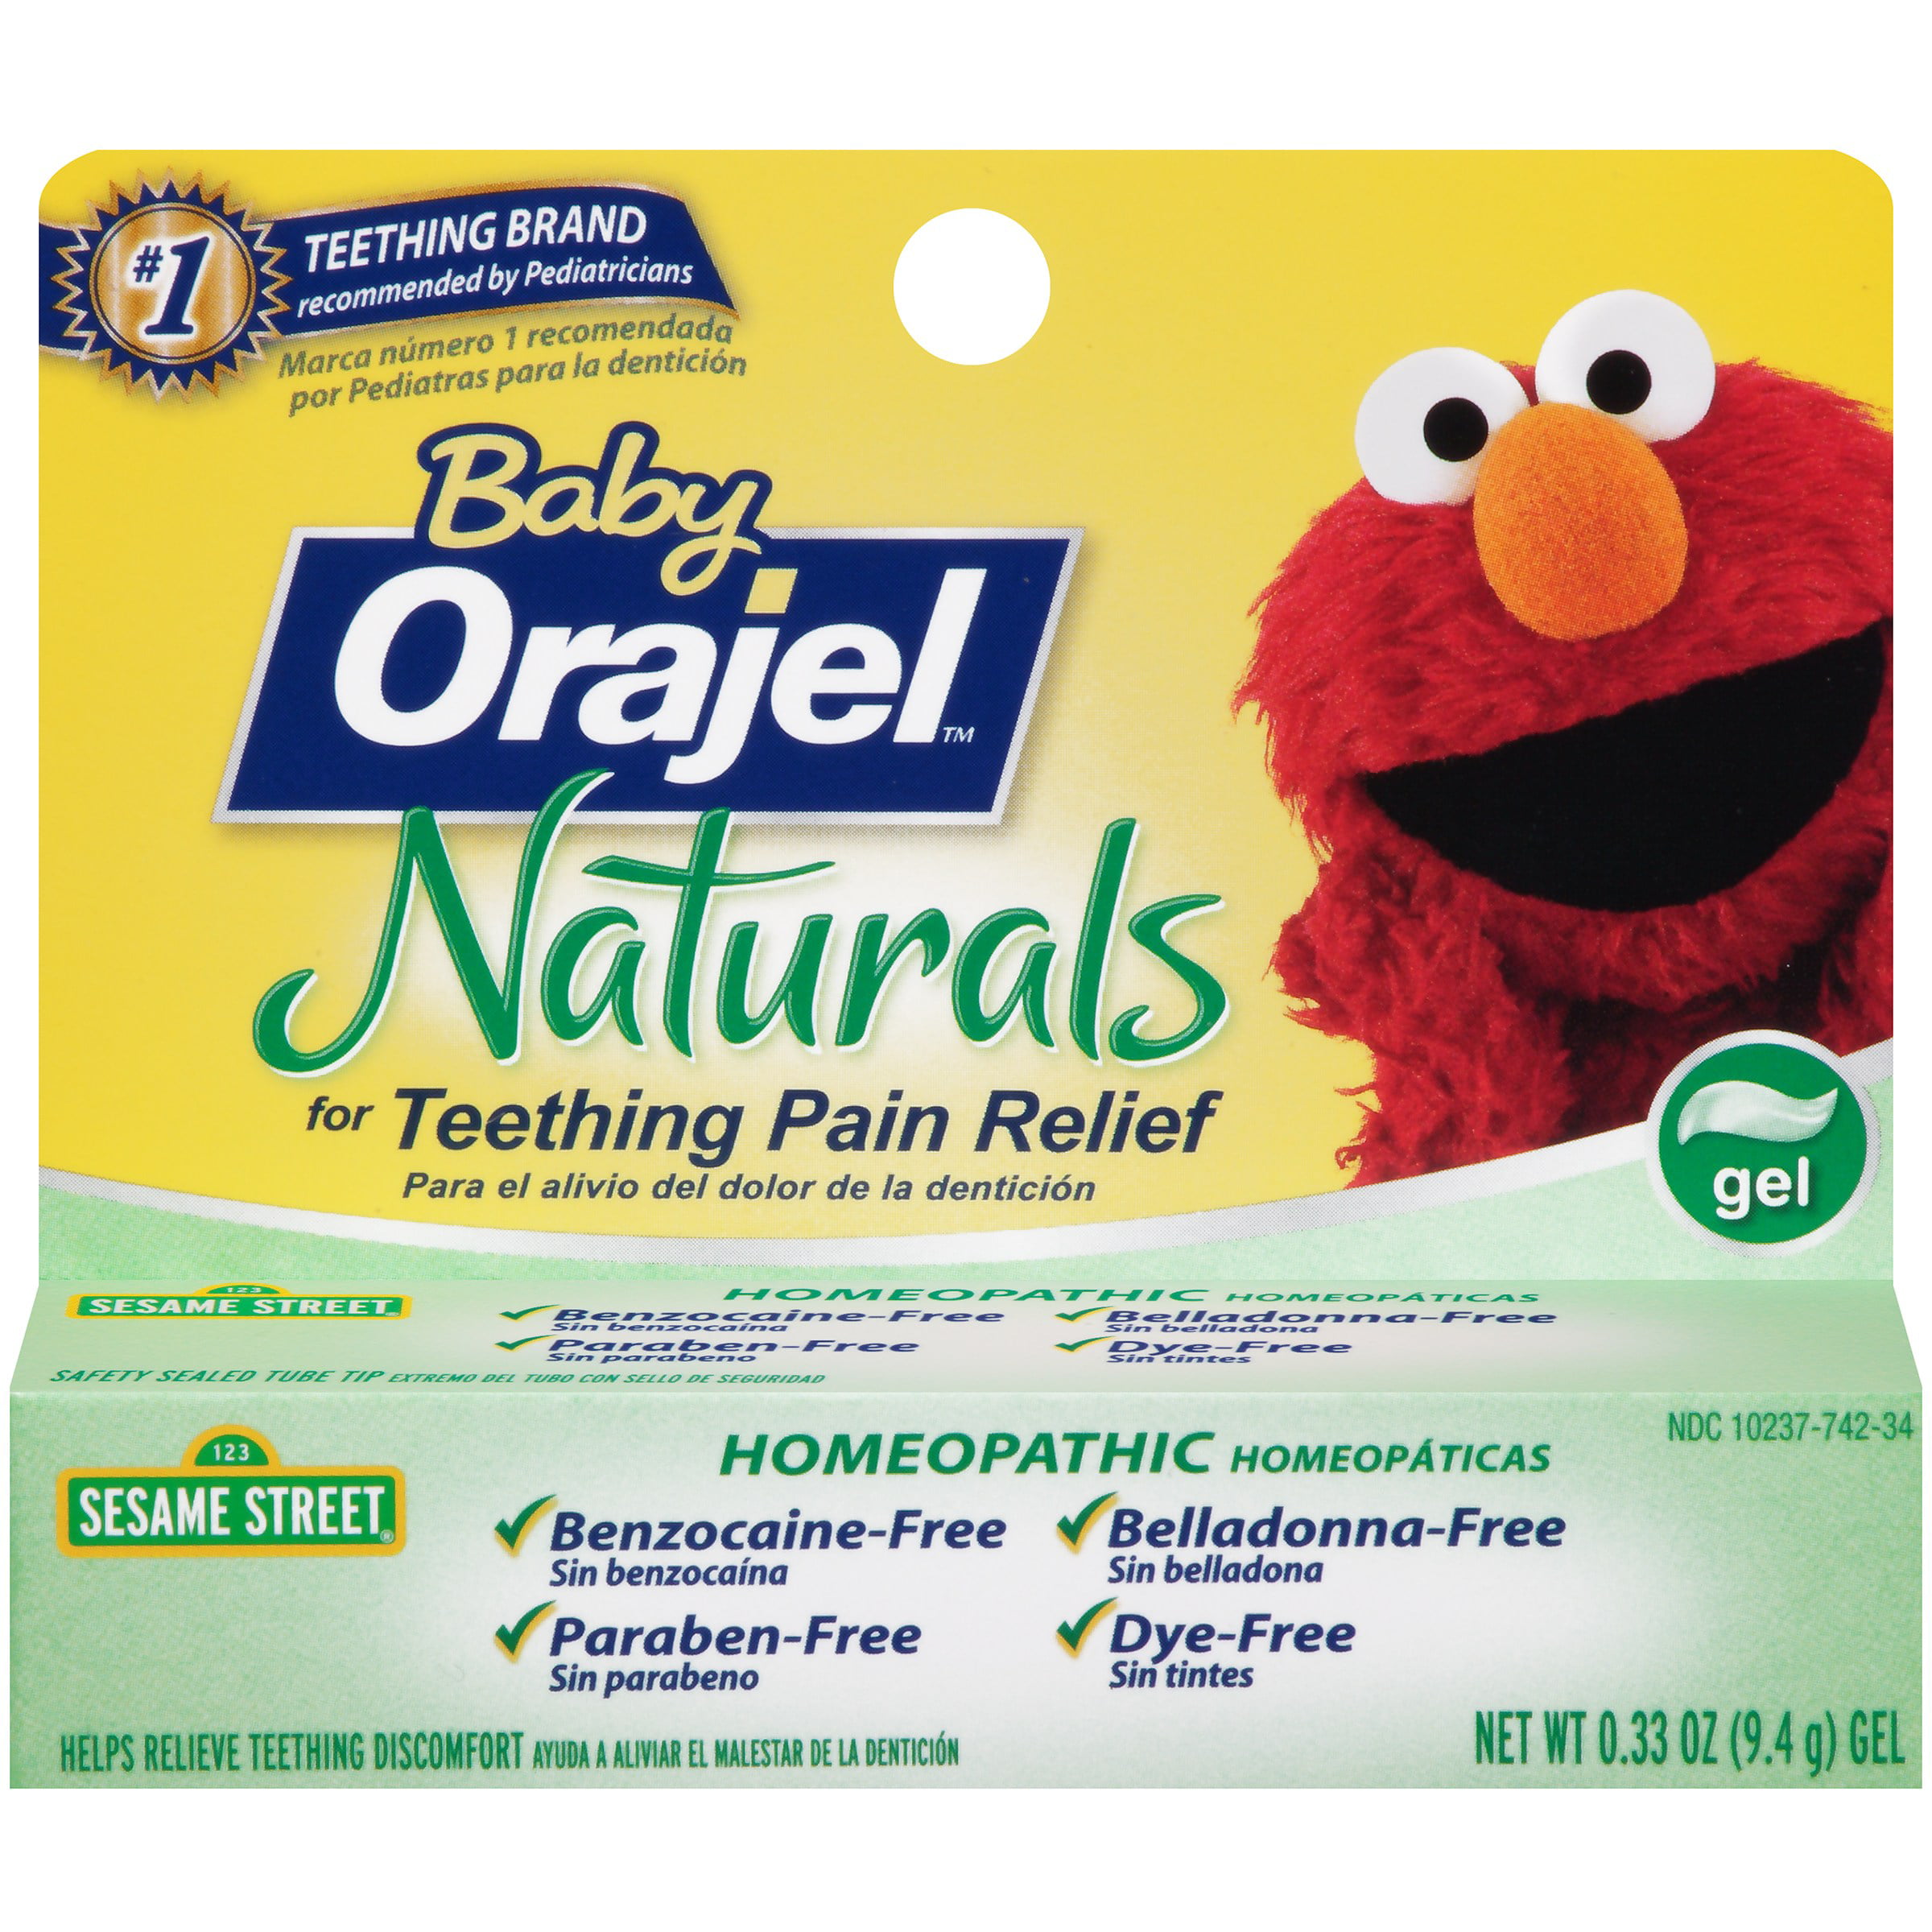 natural baby teething gel